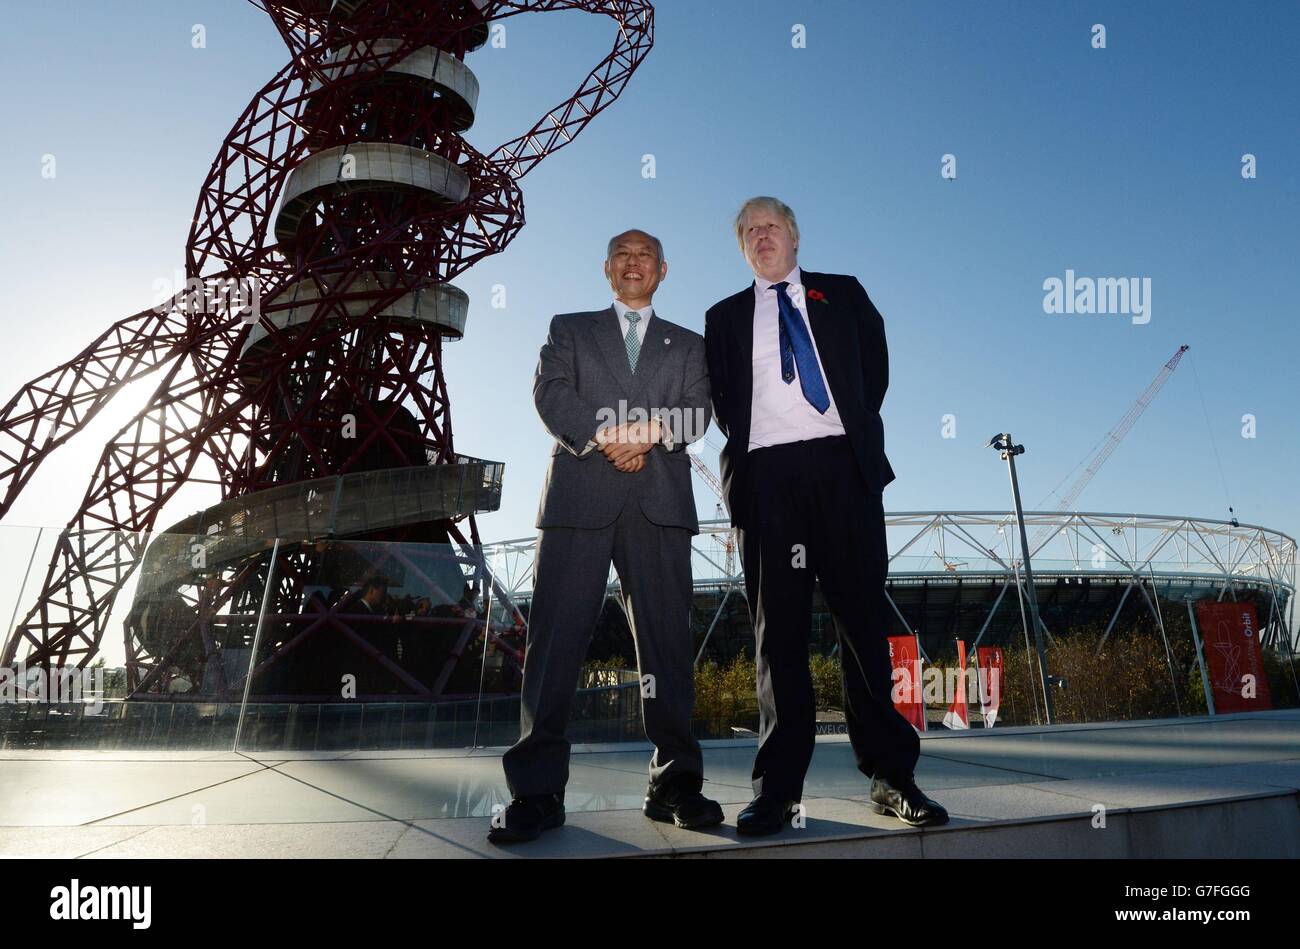 Der Bürgermeister von London, Boris Johnson, begrüßt den Gouverneur von Tokio, Yoichi Masuzoe, im Olympischen Park in London, wo er ihm die verschiedenen Olympischen Spiele in London 2012 vor Tokio, wo die Spiele 2020 ausgetragen werden, zeigte. Stockfoto